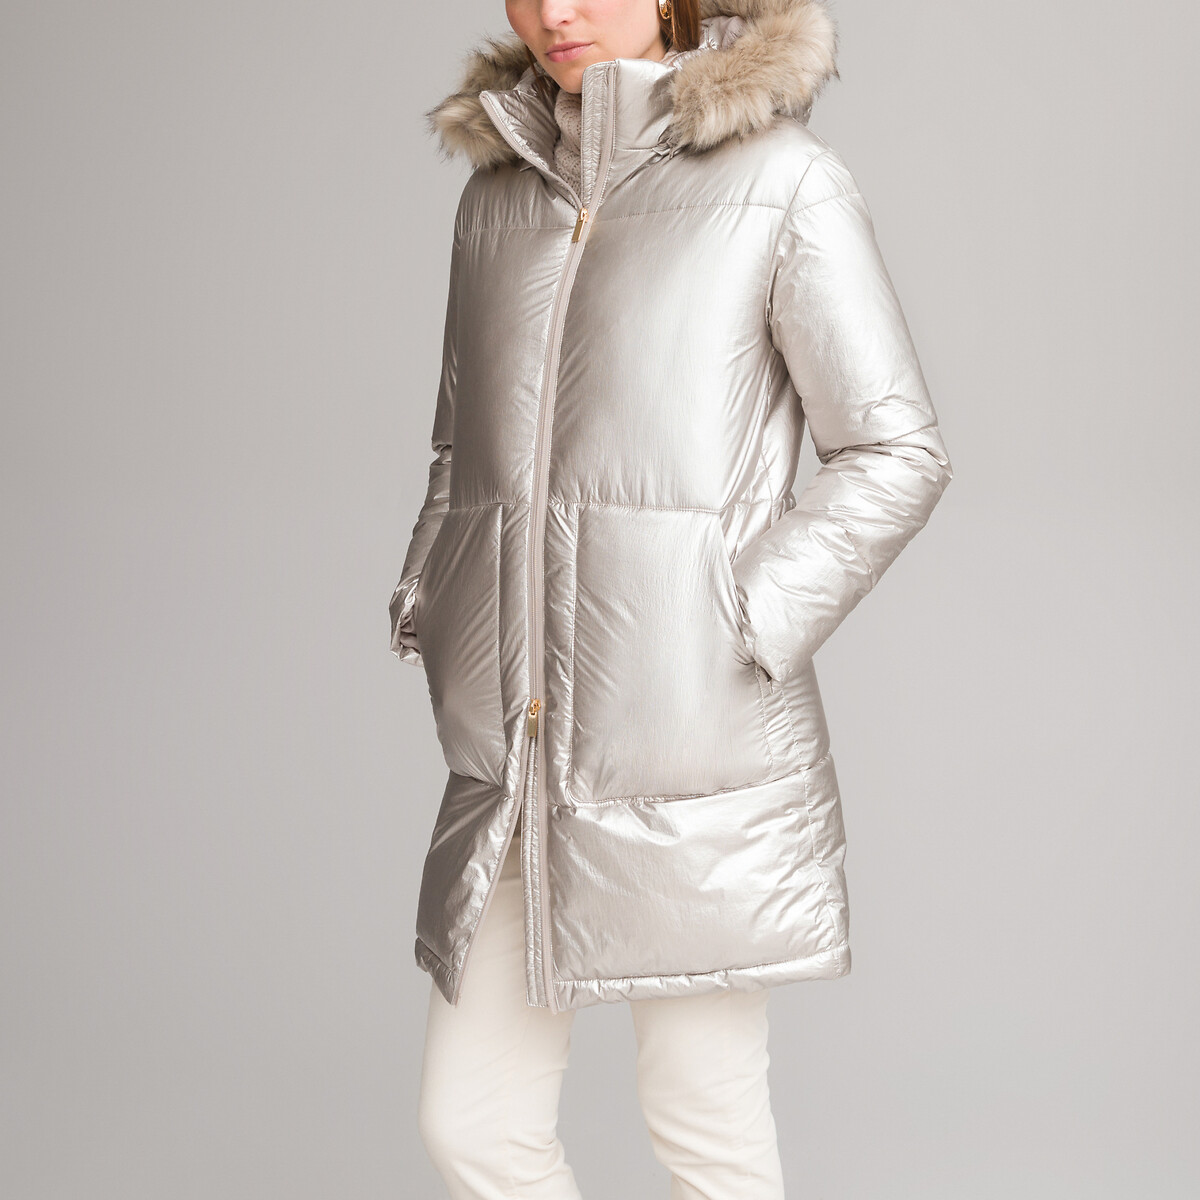 Куртка стеганая зимняя средней длины съемный капюшон 44 (FR) - 50 (RUS) серый куртка стеганая средней длины застежка на молнию зимняя модель 40 fr 46 rus красный